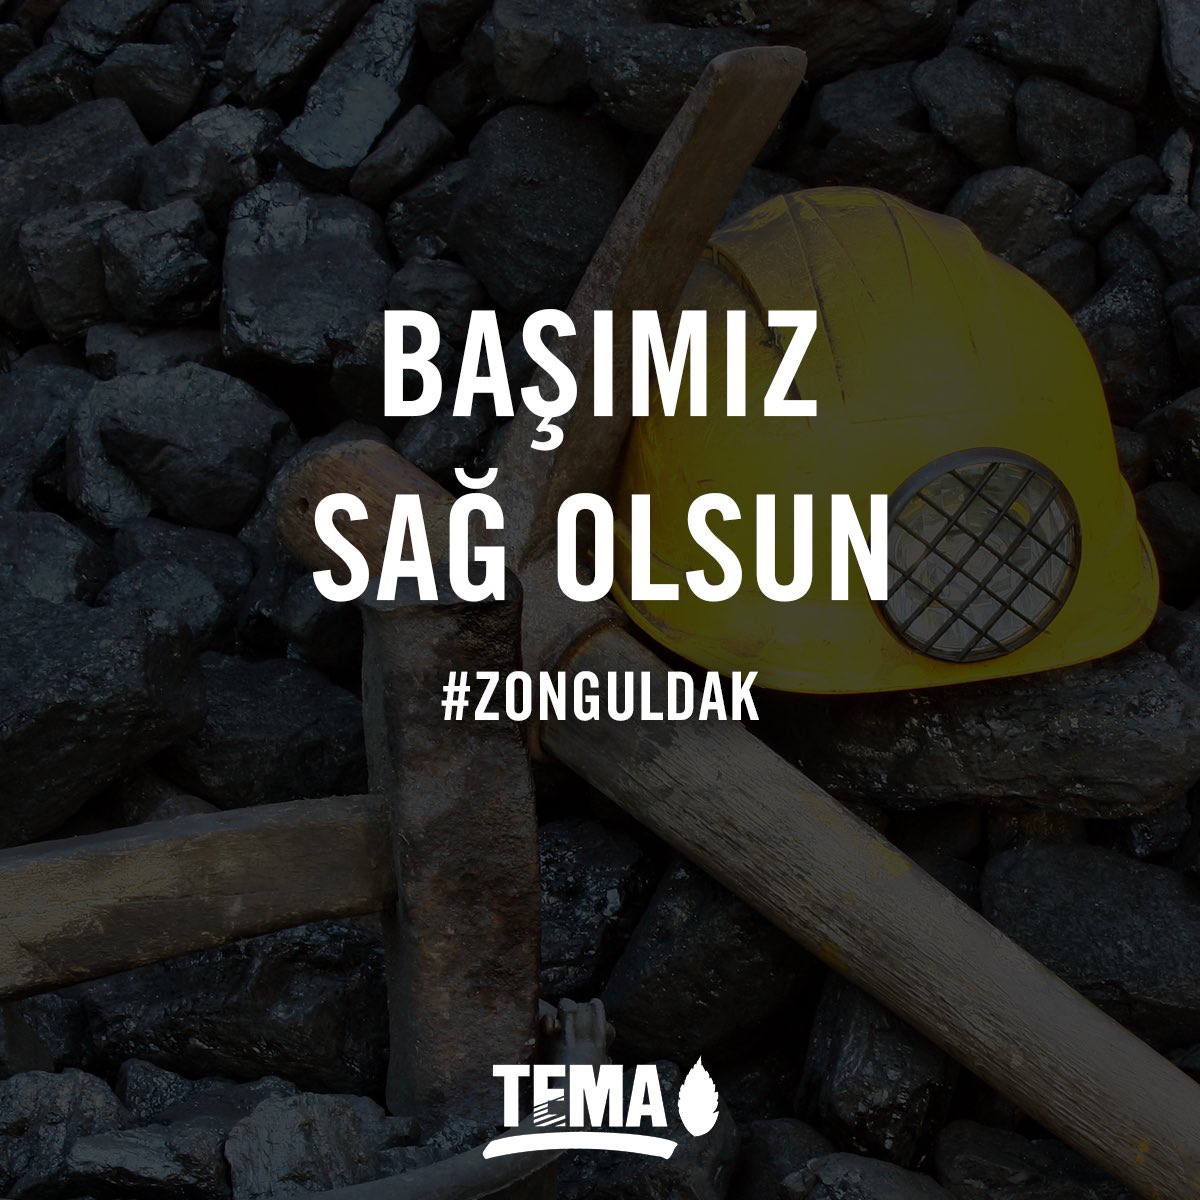 Zonguldak'ın Kilimli ilçesinde bulunan maden ocağında gerçekleşen göçük kazasında hayatını kaybeden maden işçimize Allah’tan rahmet, ailesine ve yakınlarına başsağlığı, yaralanan maden işçimize acil şifalar diliyoruz. 📌 TEMA Vakfı olarak; işçilerin yaşamını tehlikeye atan,